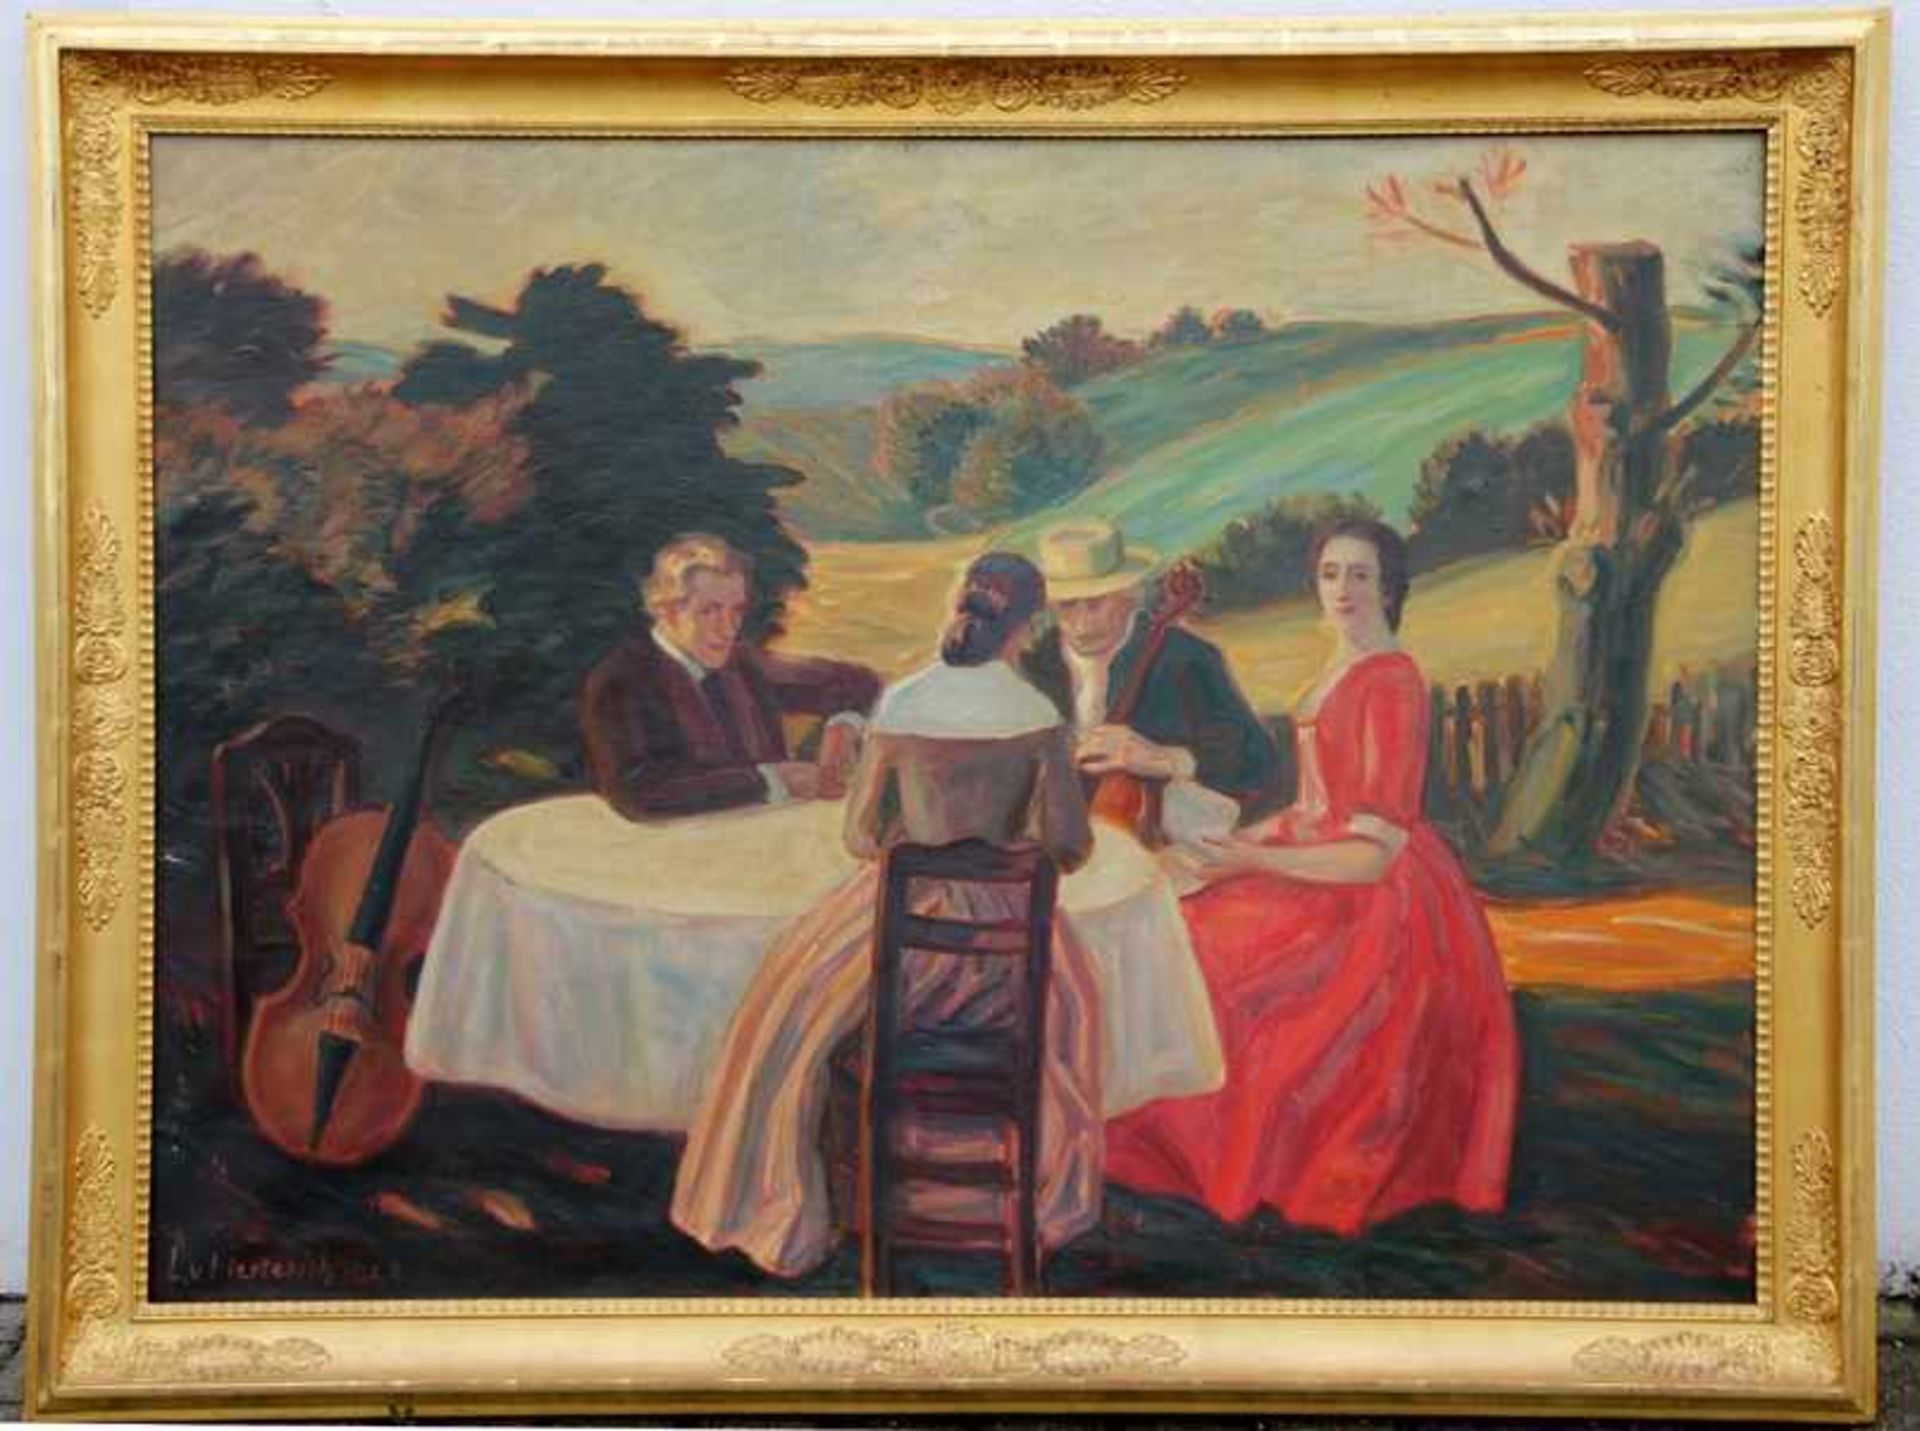 von Herterich, Ludwig1856-1932, großeformatige Landschaft mit Personen, 2 Paare beim Musizieren in